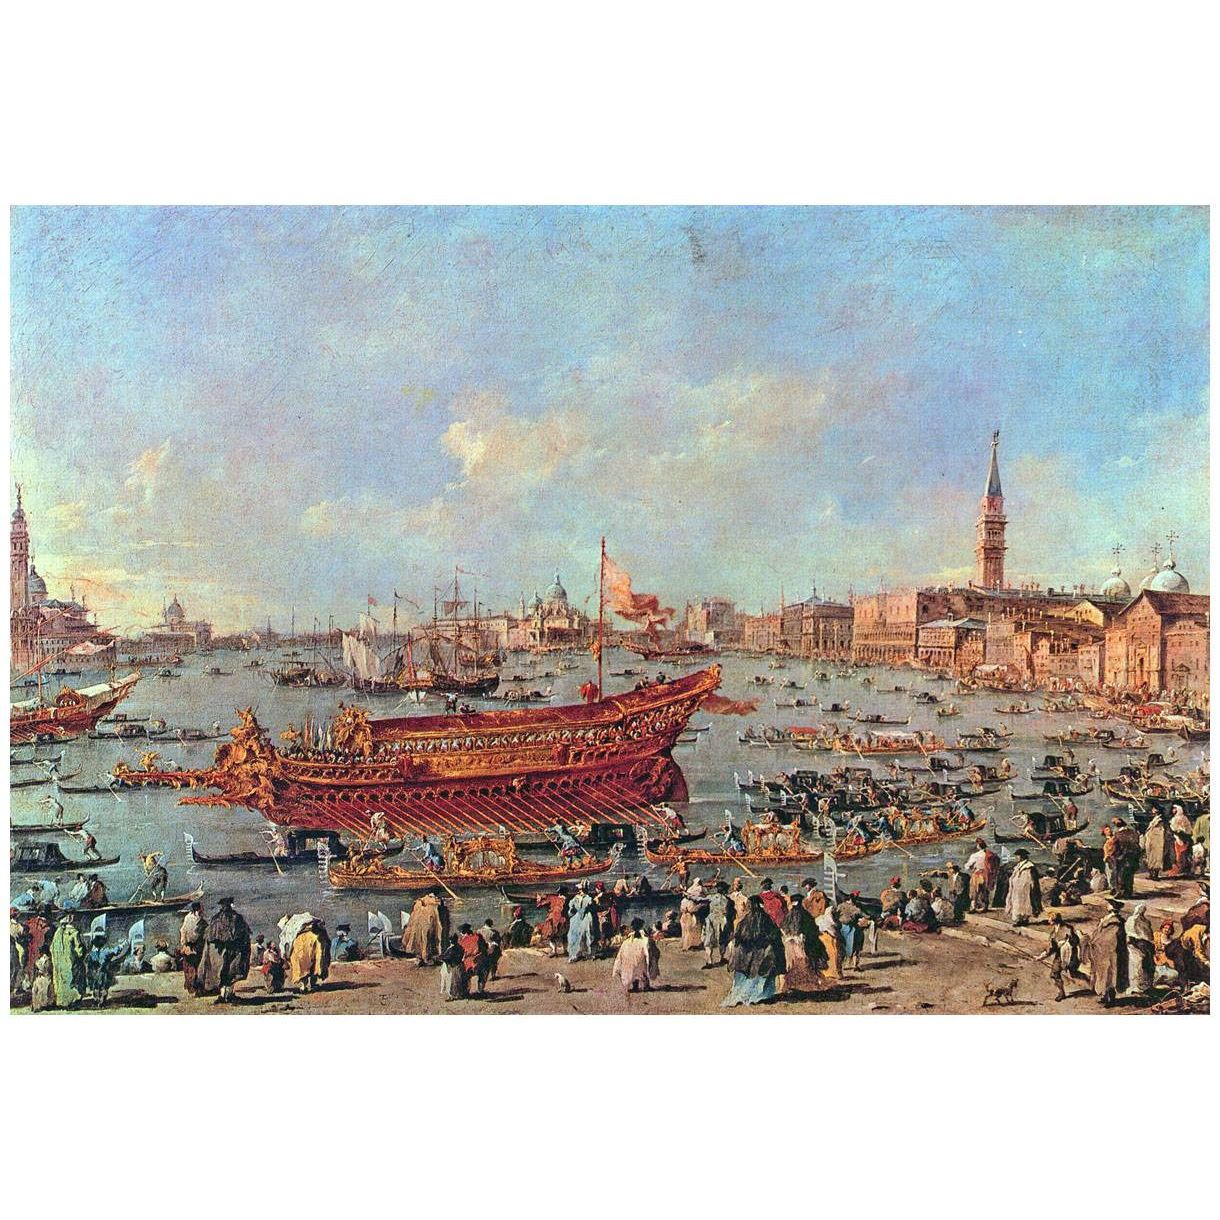 Francesco Guardi. La partenza di Bucentaure per il Lido. 1775-1780. Louvre